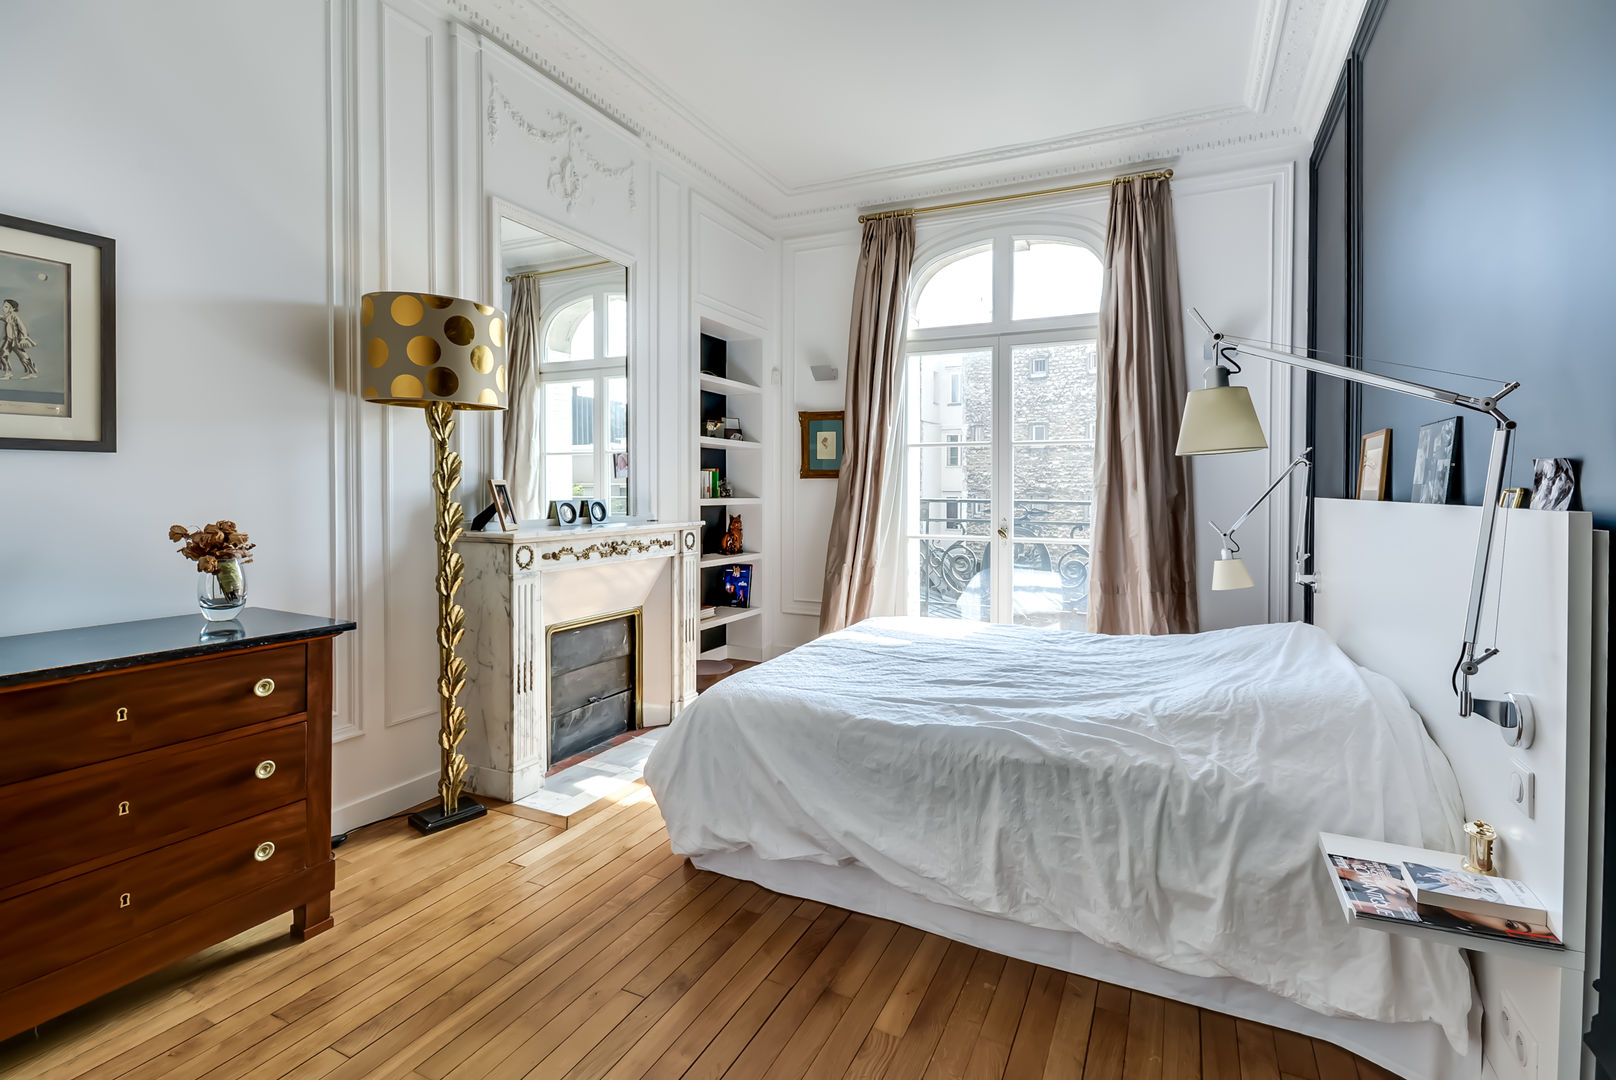 Un appartement haussmanien revisité - Paris 16e, ATELIER FB ATELIER FB Bedroom